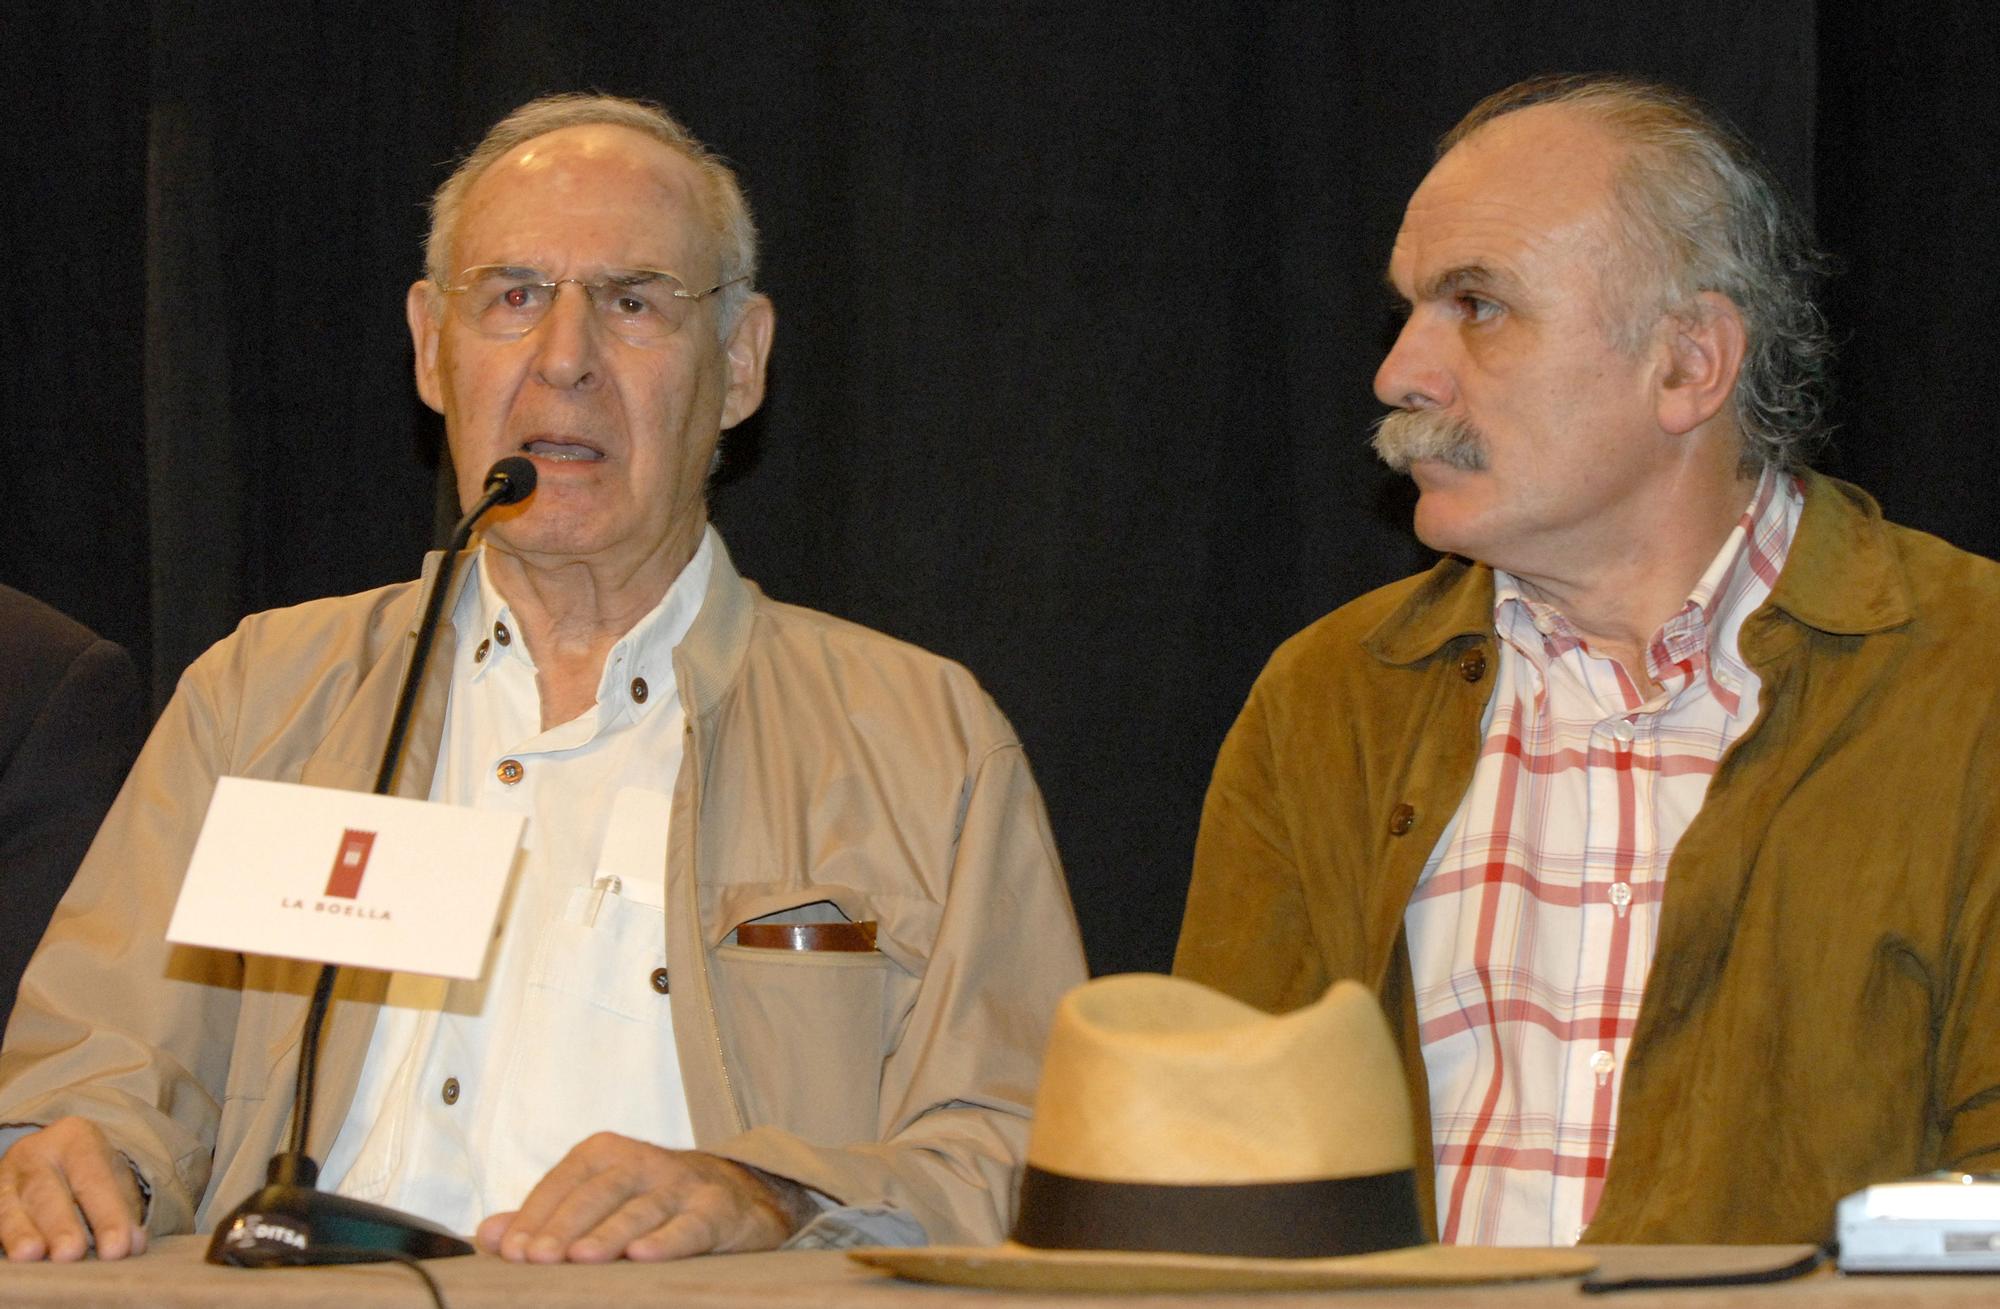 El profesor Emiliano Aguirre (izquierda), acompañado de Eudald Carbonell, en una rueda de prensa de 2007